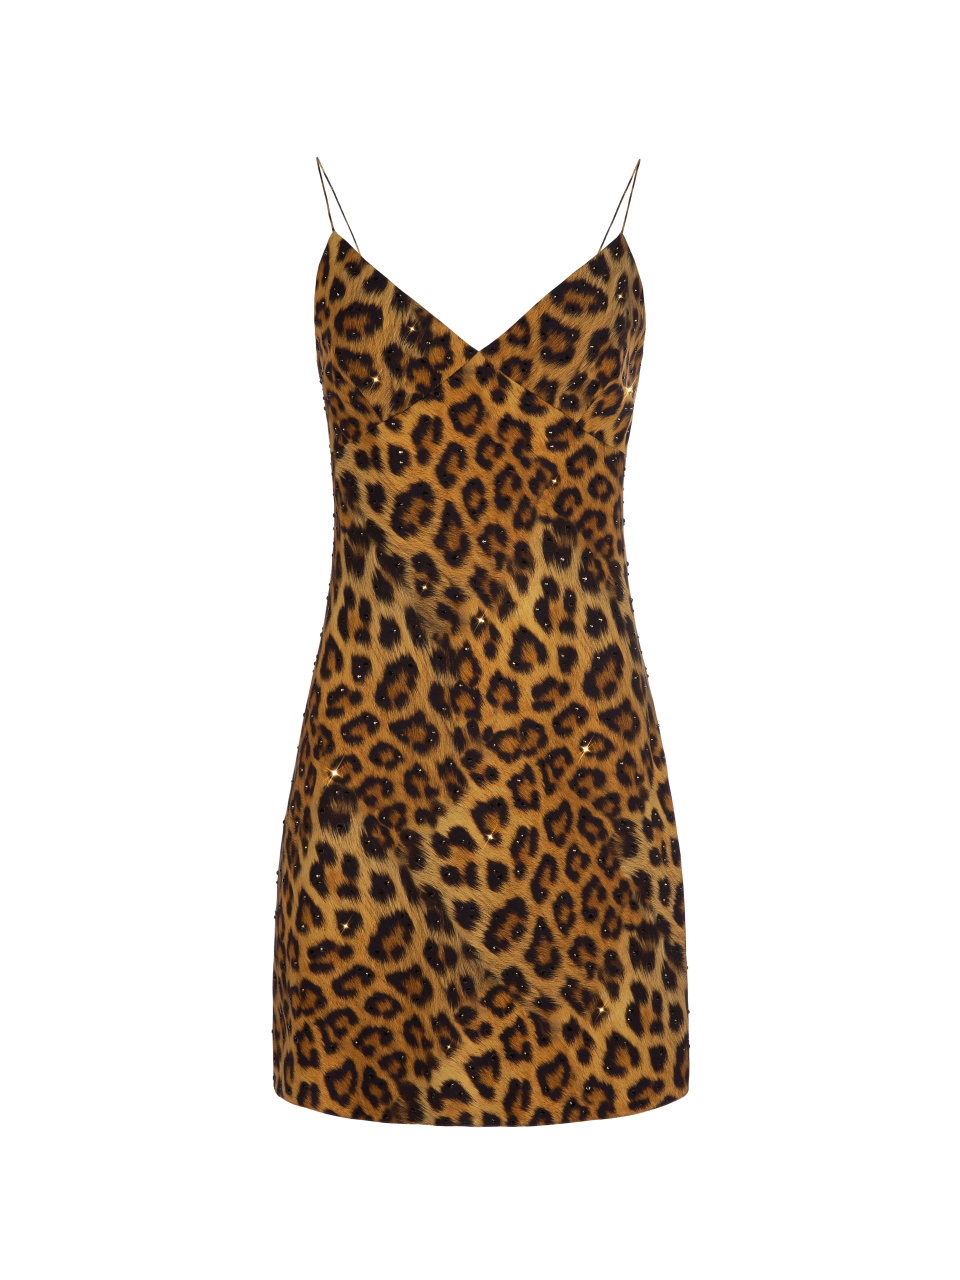 Шелковое платье-мини с леопардовым принтом, 1